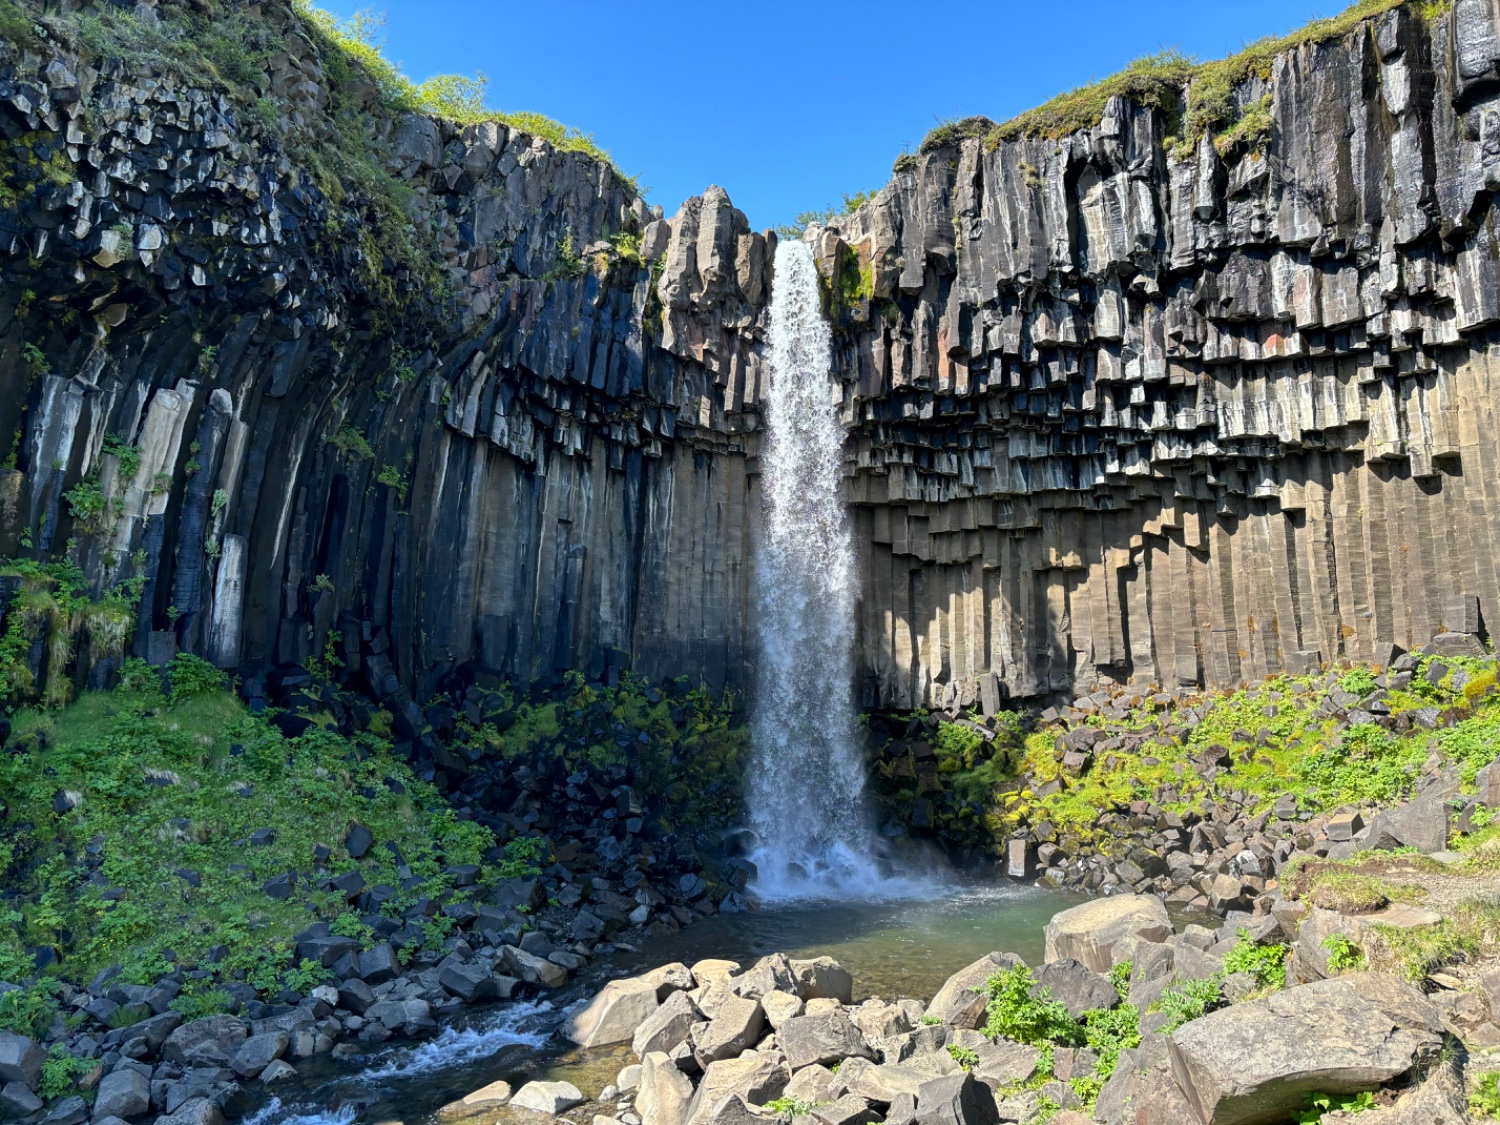 Hexagonal basalt columns at Svartifoss, Iceland [OC]